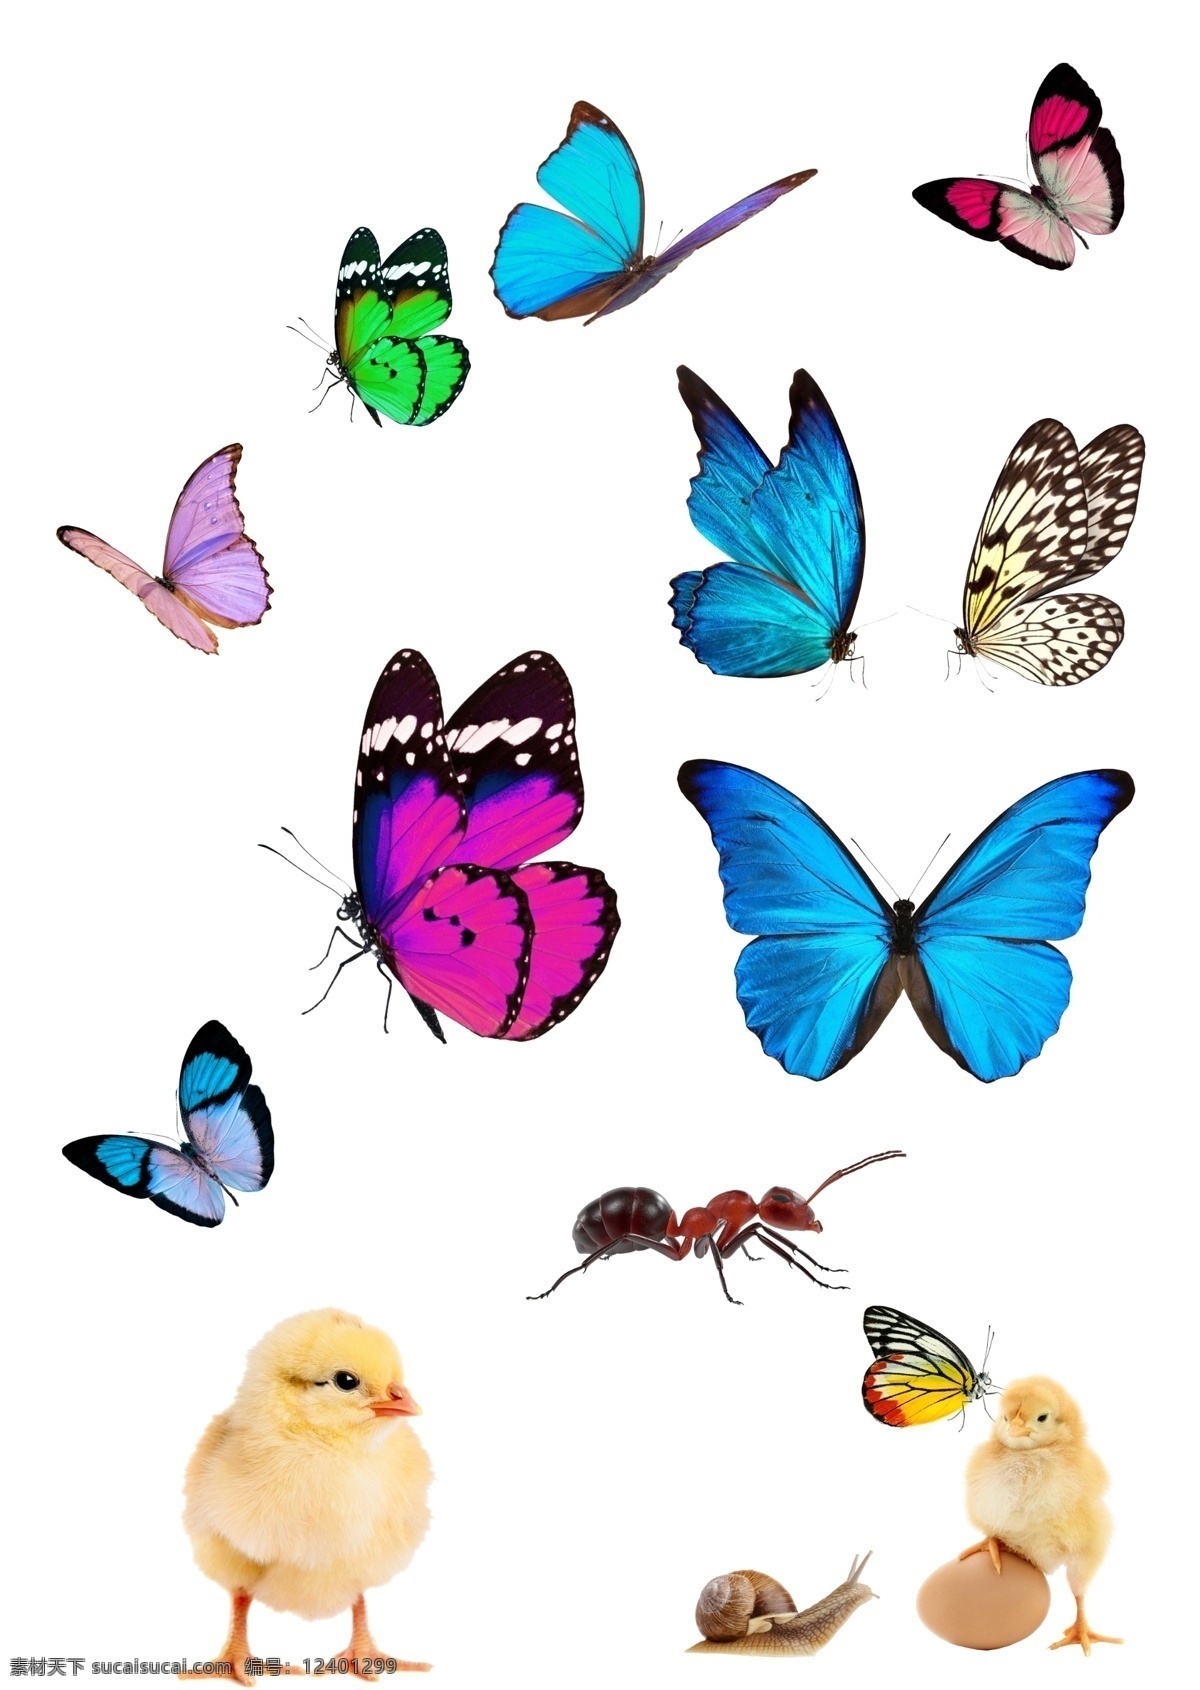 蝴蝶 分层 图 蚂蚁 小鸡 雏鸡 蜗牛 鸡蛋 分层图 春天素材 小蝴蝶 昆虫 抠图 生物世界